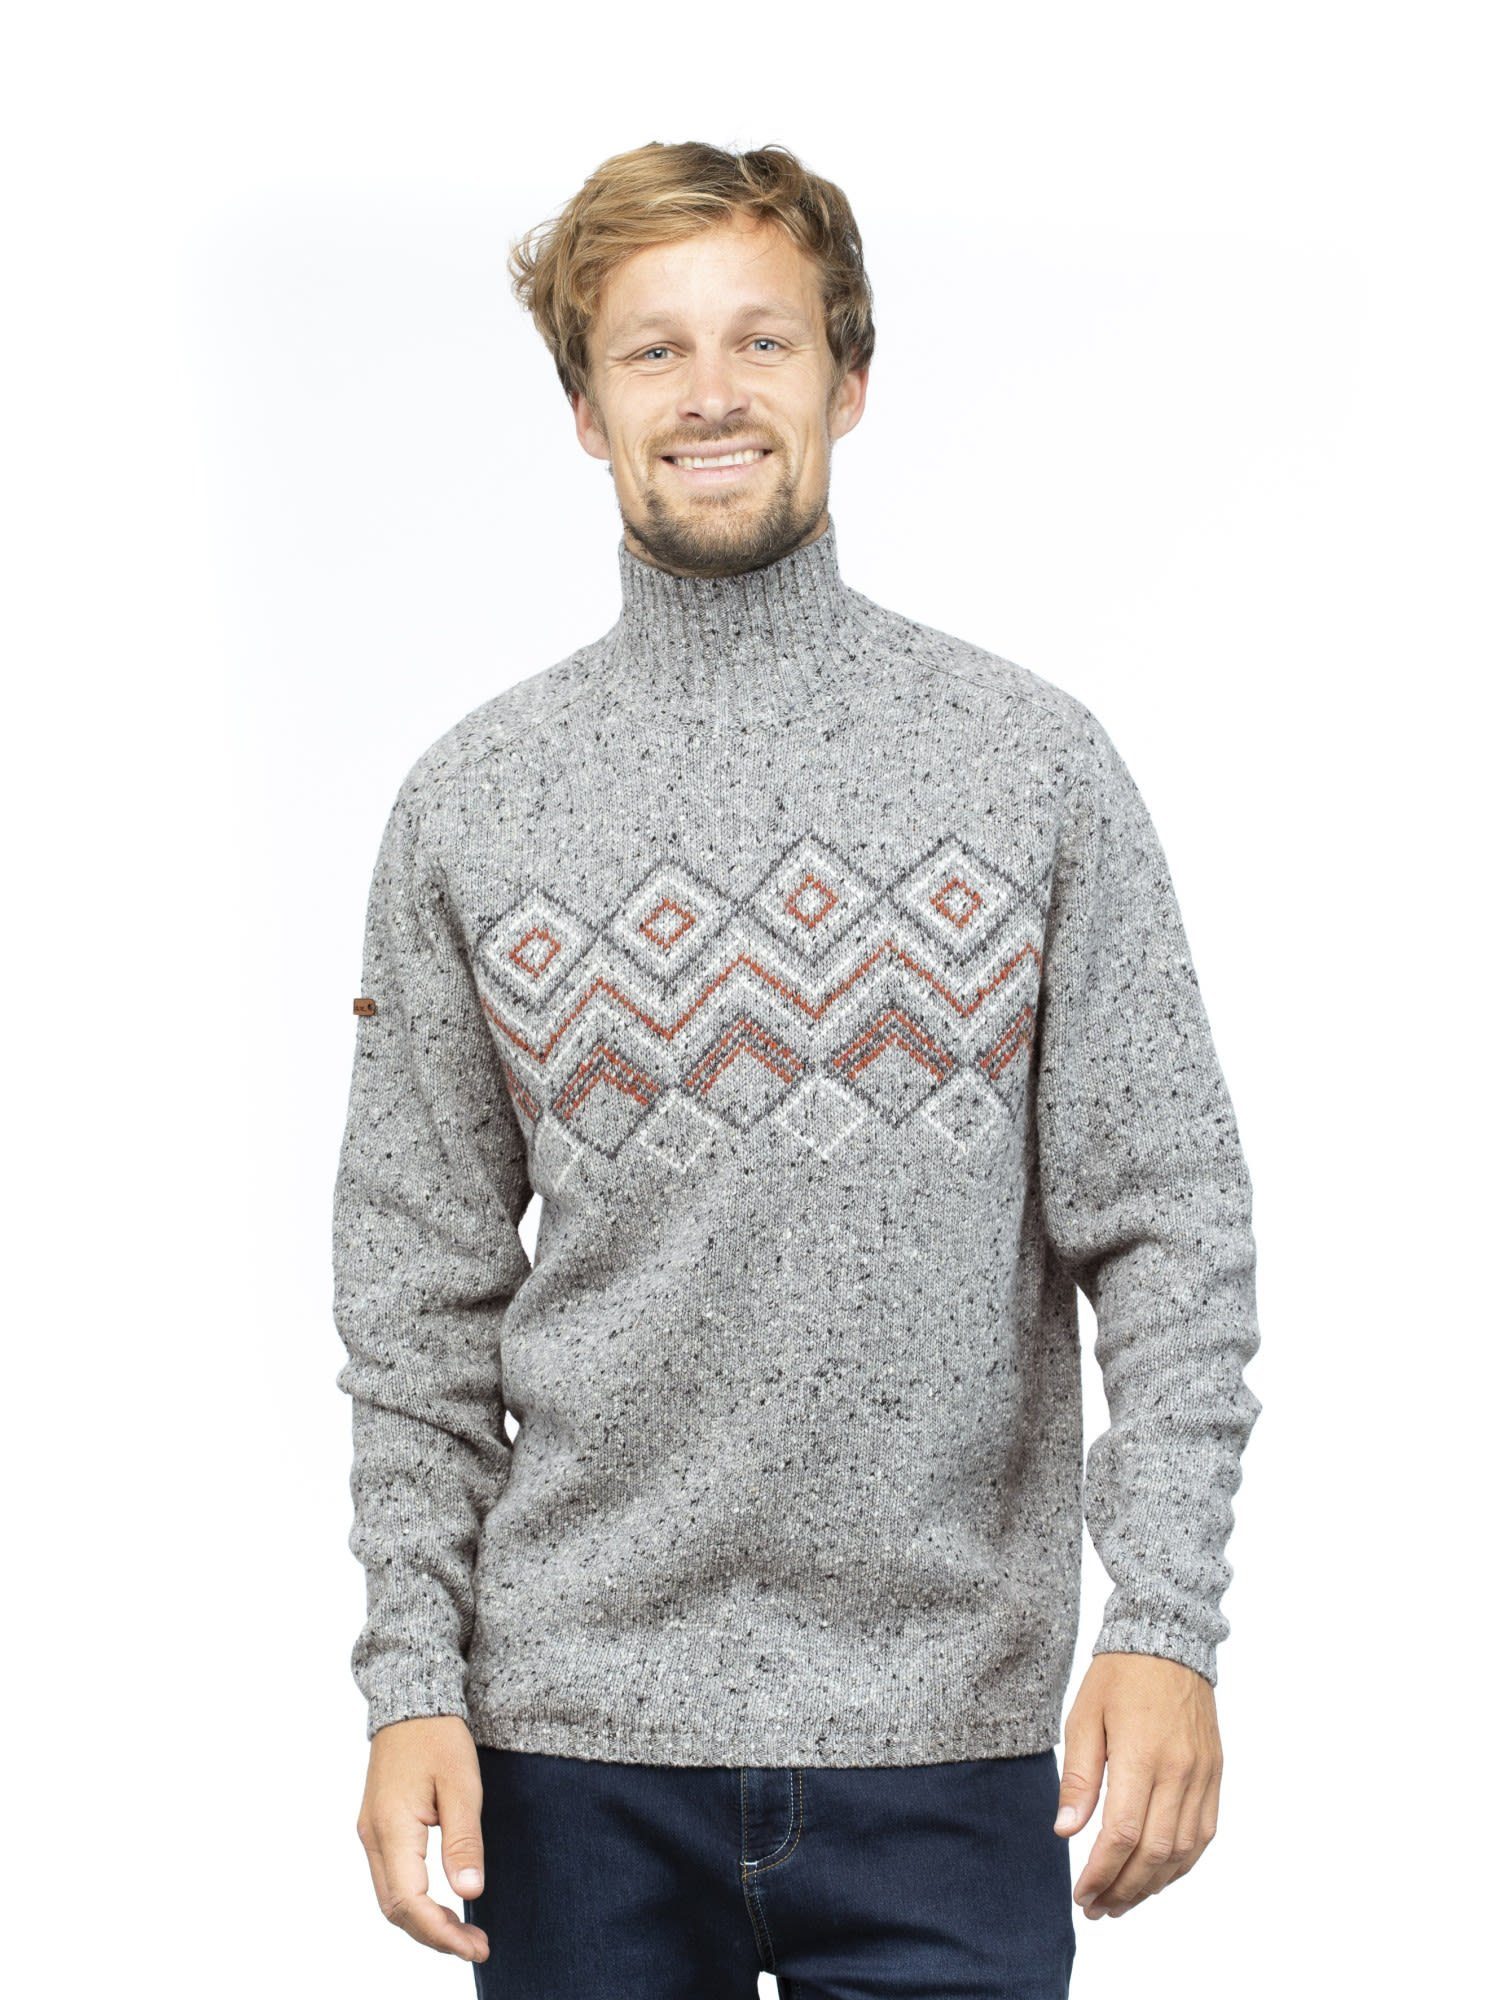 Chillaz Grey Fleecepullover Melange Herren M Chillaz Sweater Selfoss